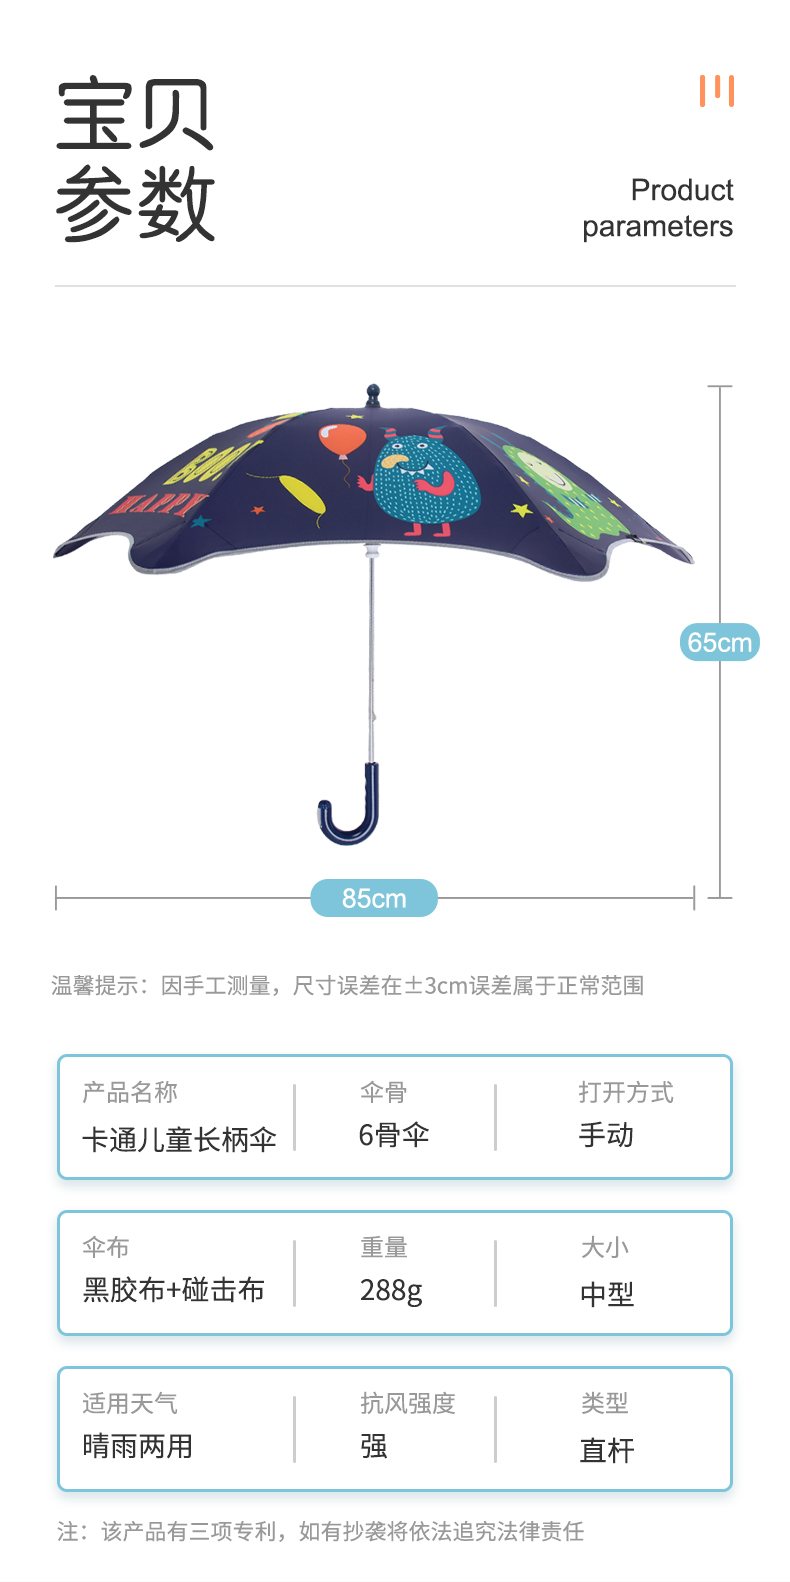 Round Corner Umbrella Parameter